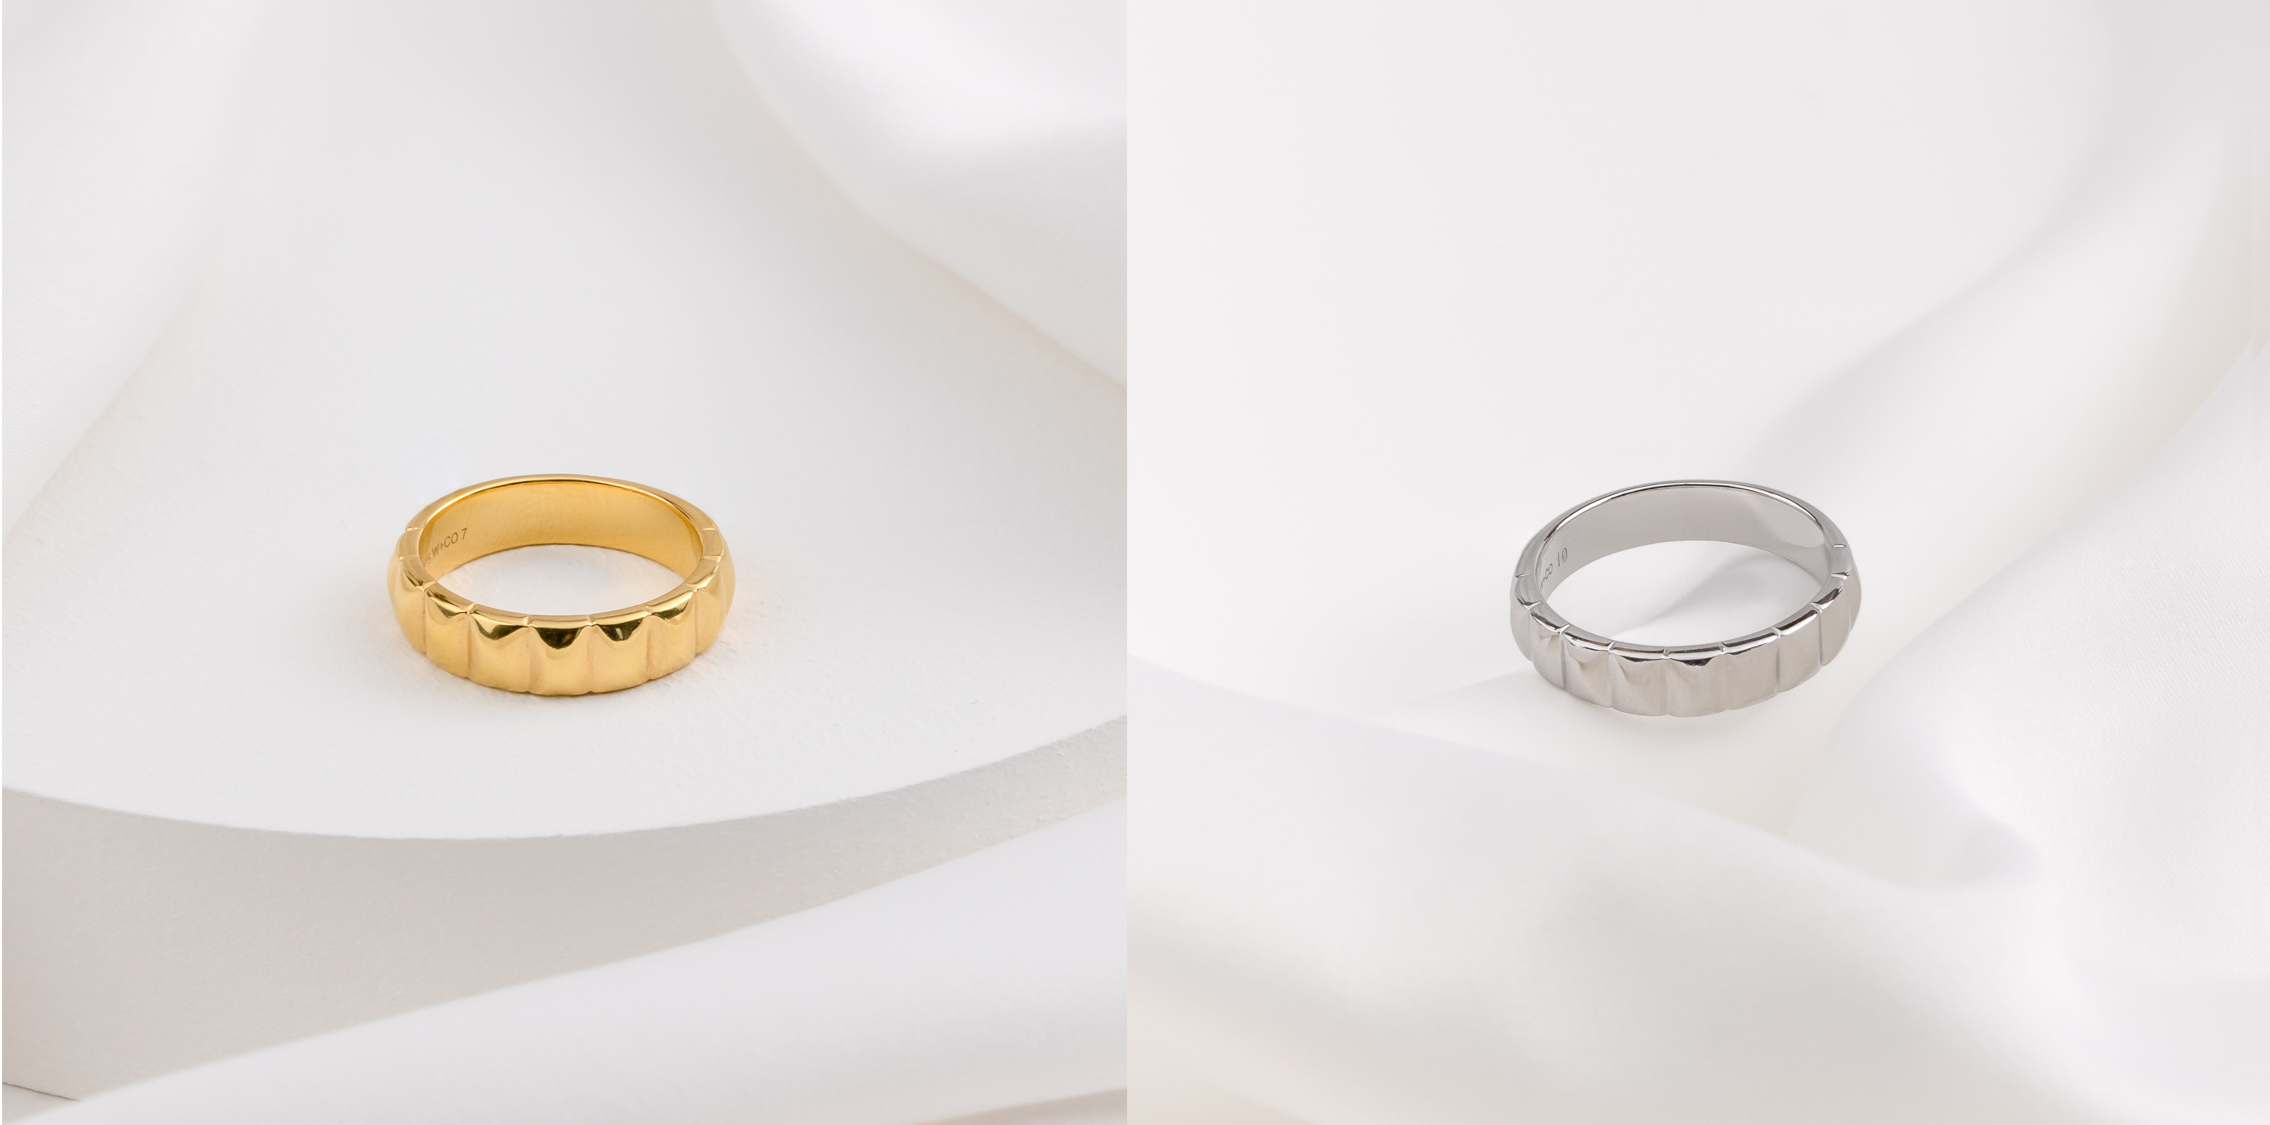 Louis Vuitton Empreinte 18K Rose Gold Ring Size 50